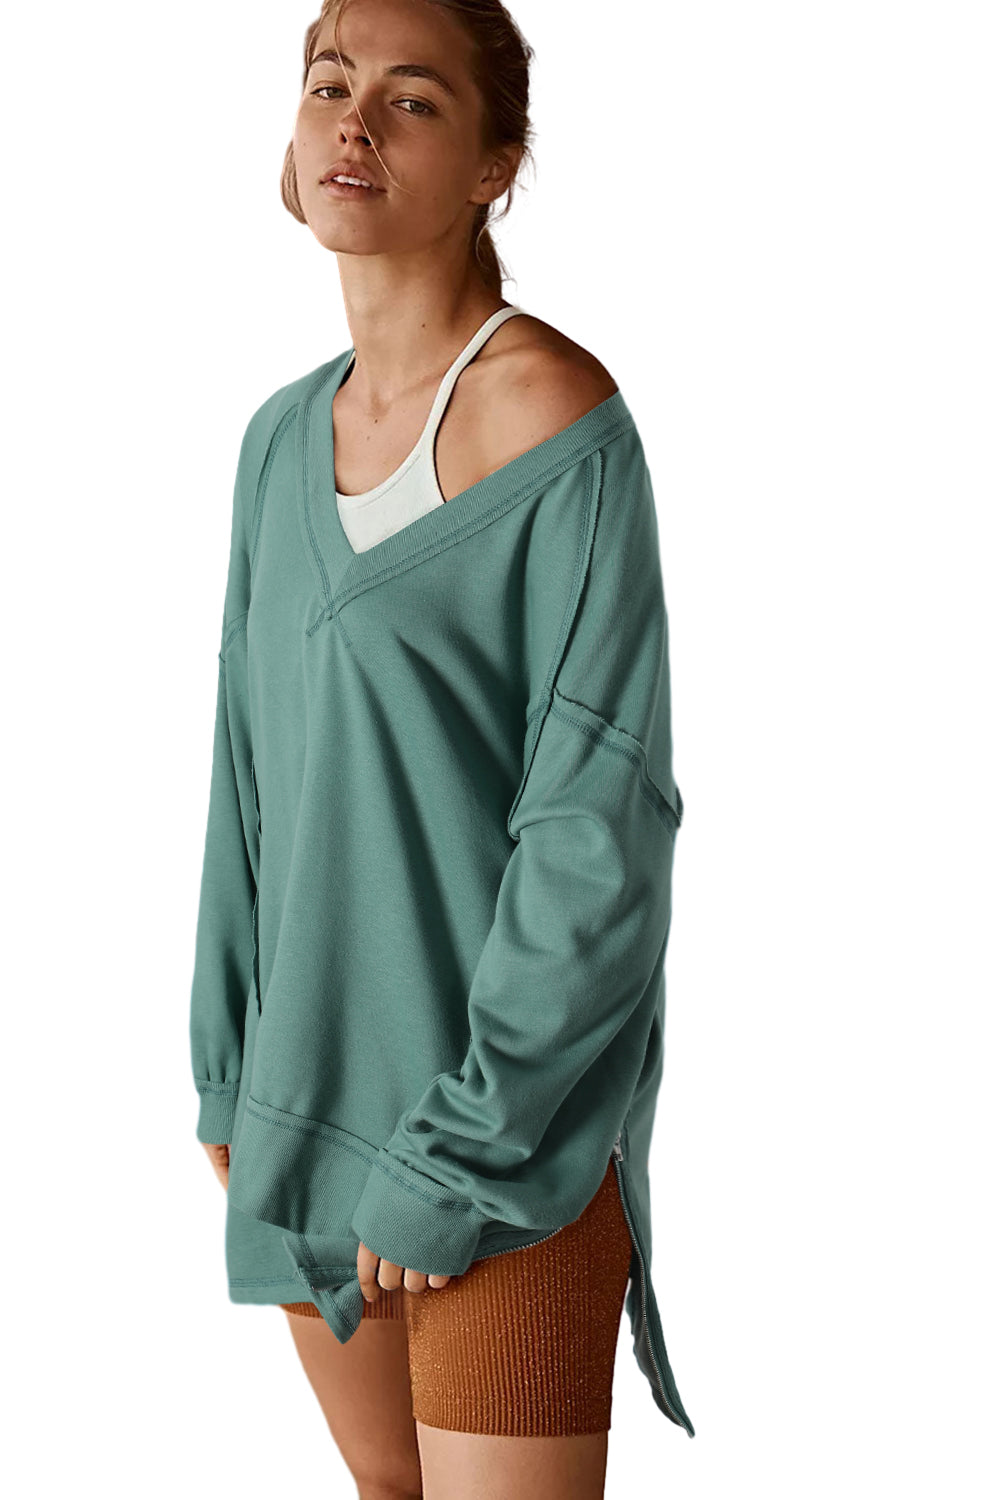 Sweat-shirt ample vert à coutures apparentes, haut et bas, col en V